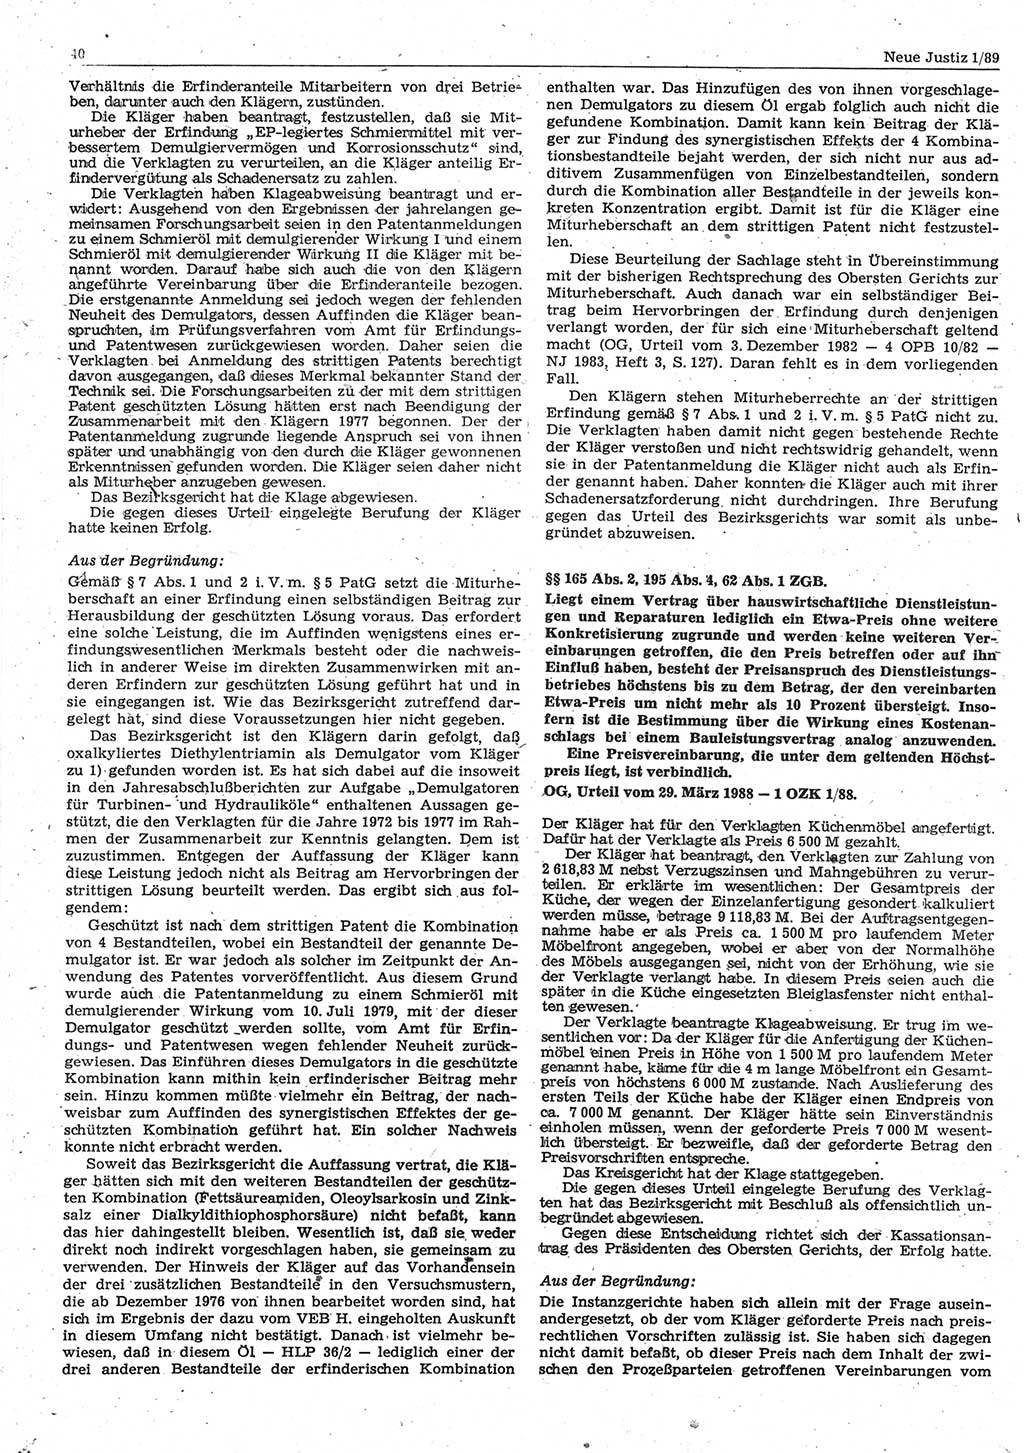 Neue Justiz (NJ), Zeitschrift für sozialistisches Recht und Gesetzlichkeit [Deutsche Demokratische Republik (DDR)], 43. Jahrgang 1989, Seite 40 (NJ DDR 1989, S. 40)